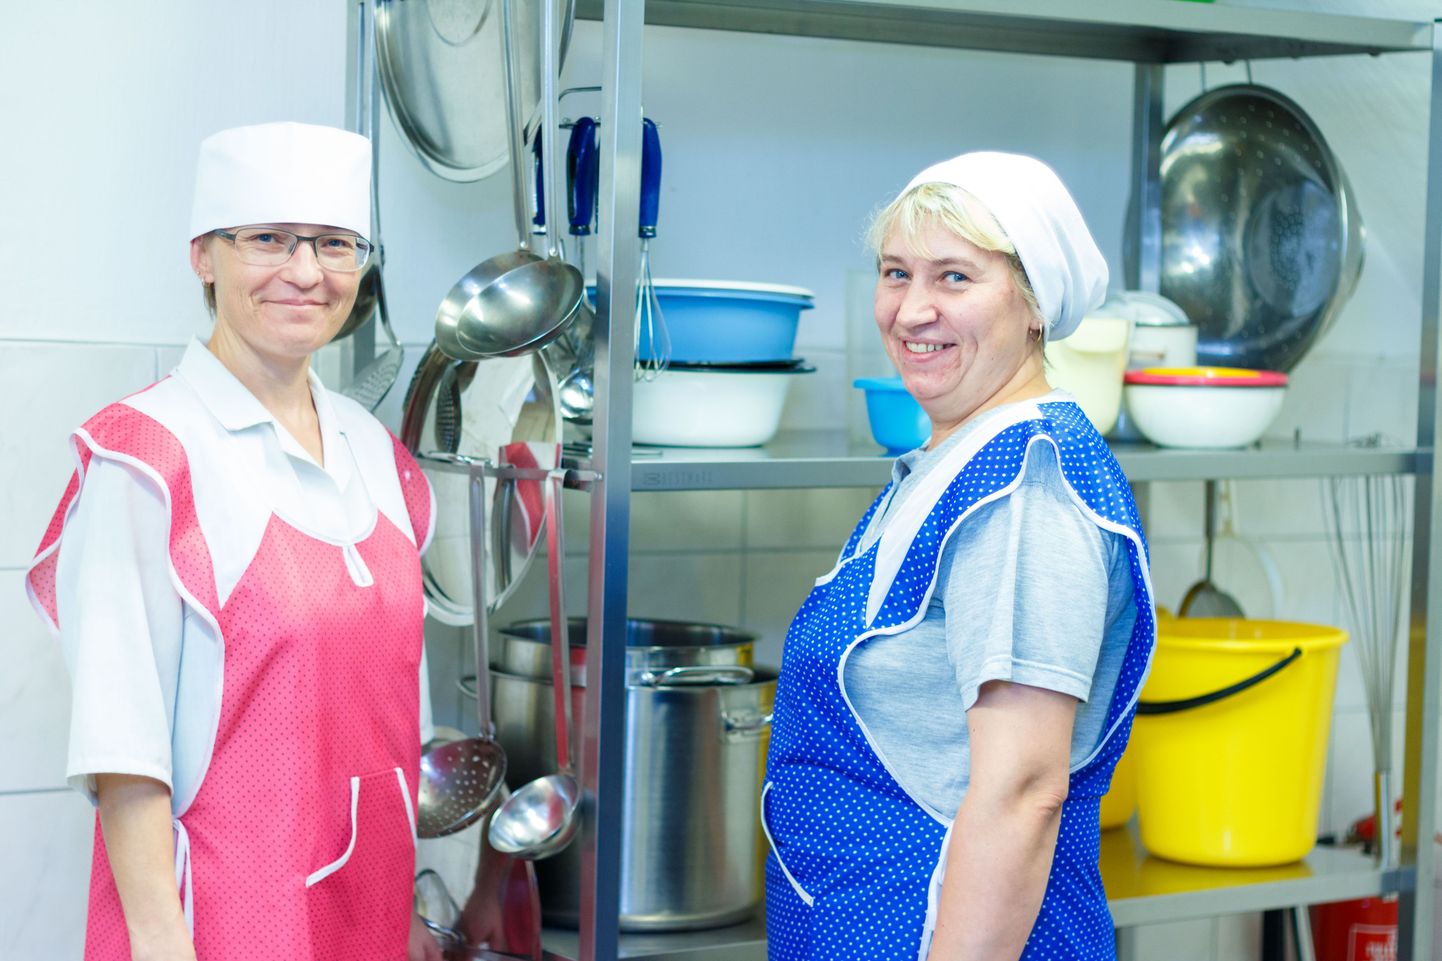 Palupera kooli kokk Leelo Reha (vasakul) koos oma abilise Irina Gergaloga ajal, mil ta veel ei teadnud, et saab peagi valitud Eesti parimaks koolikokaks.